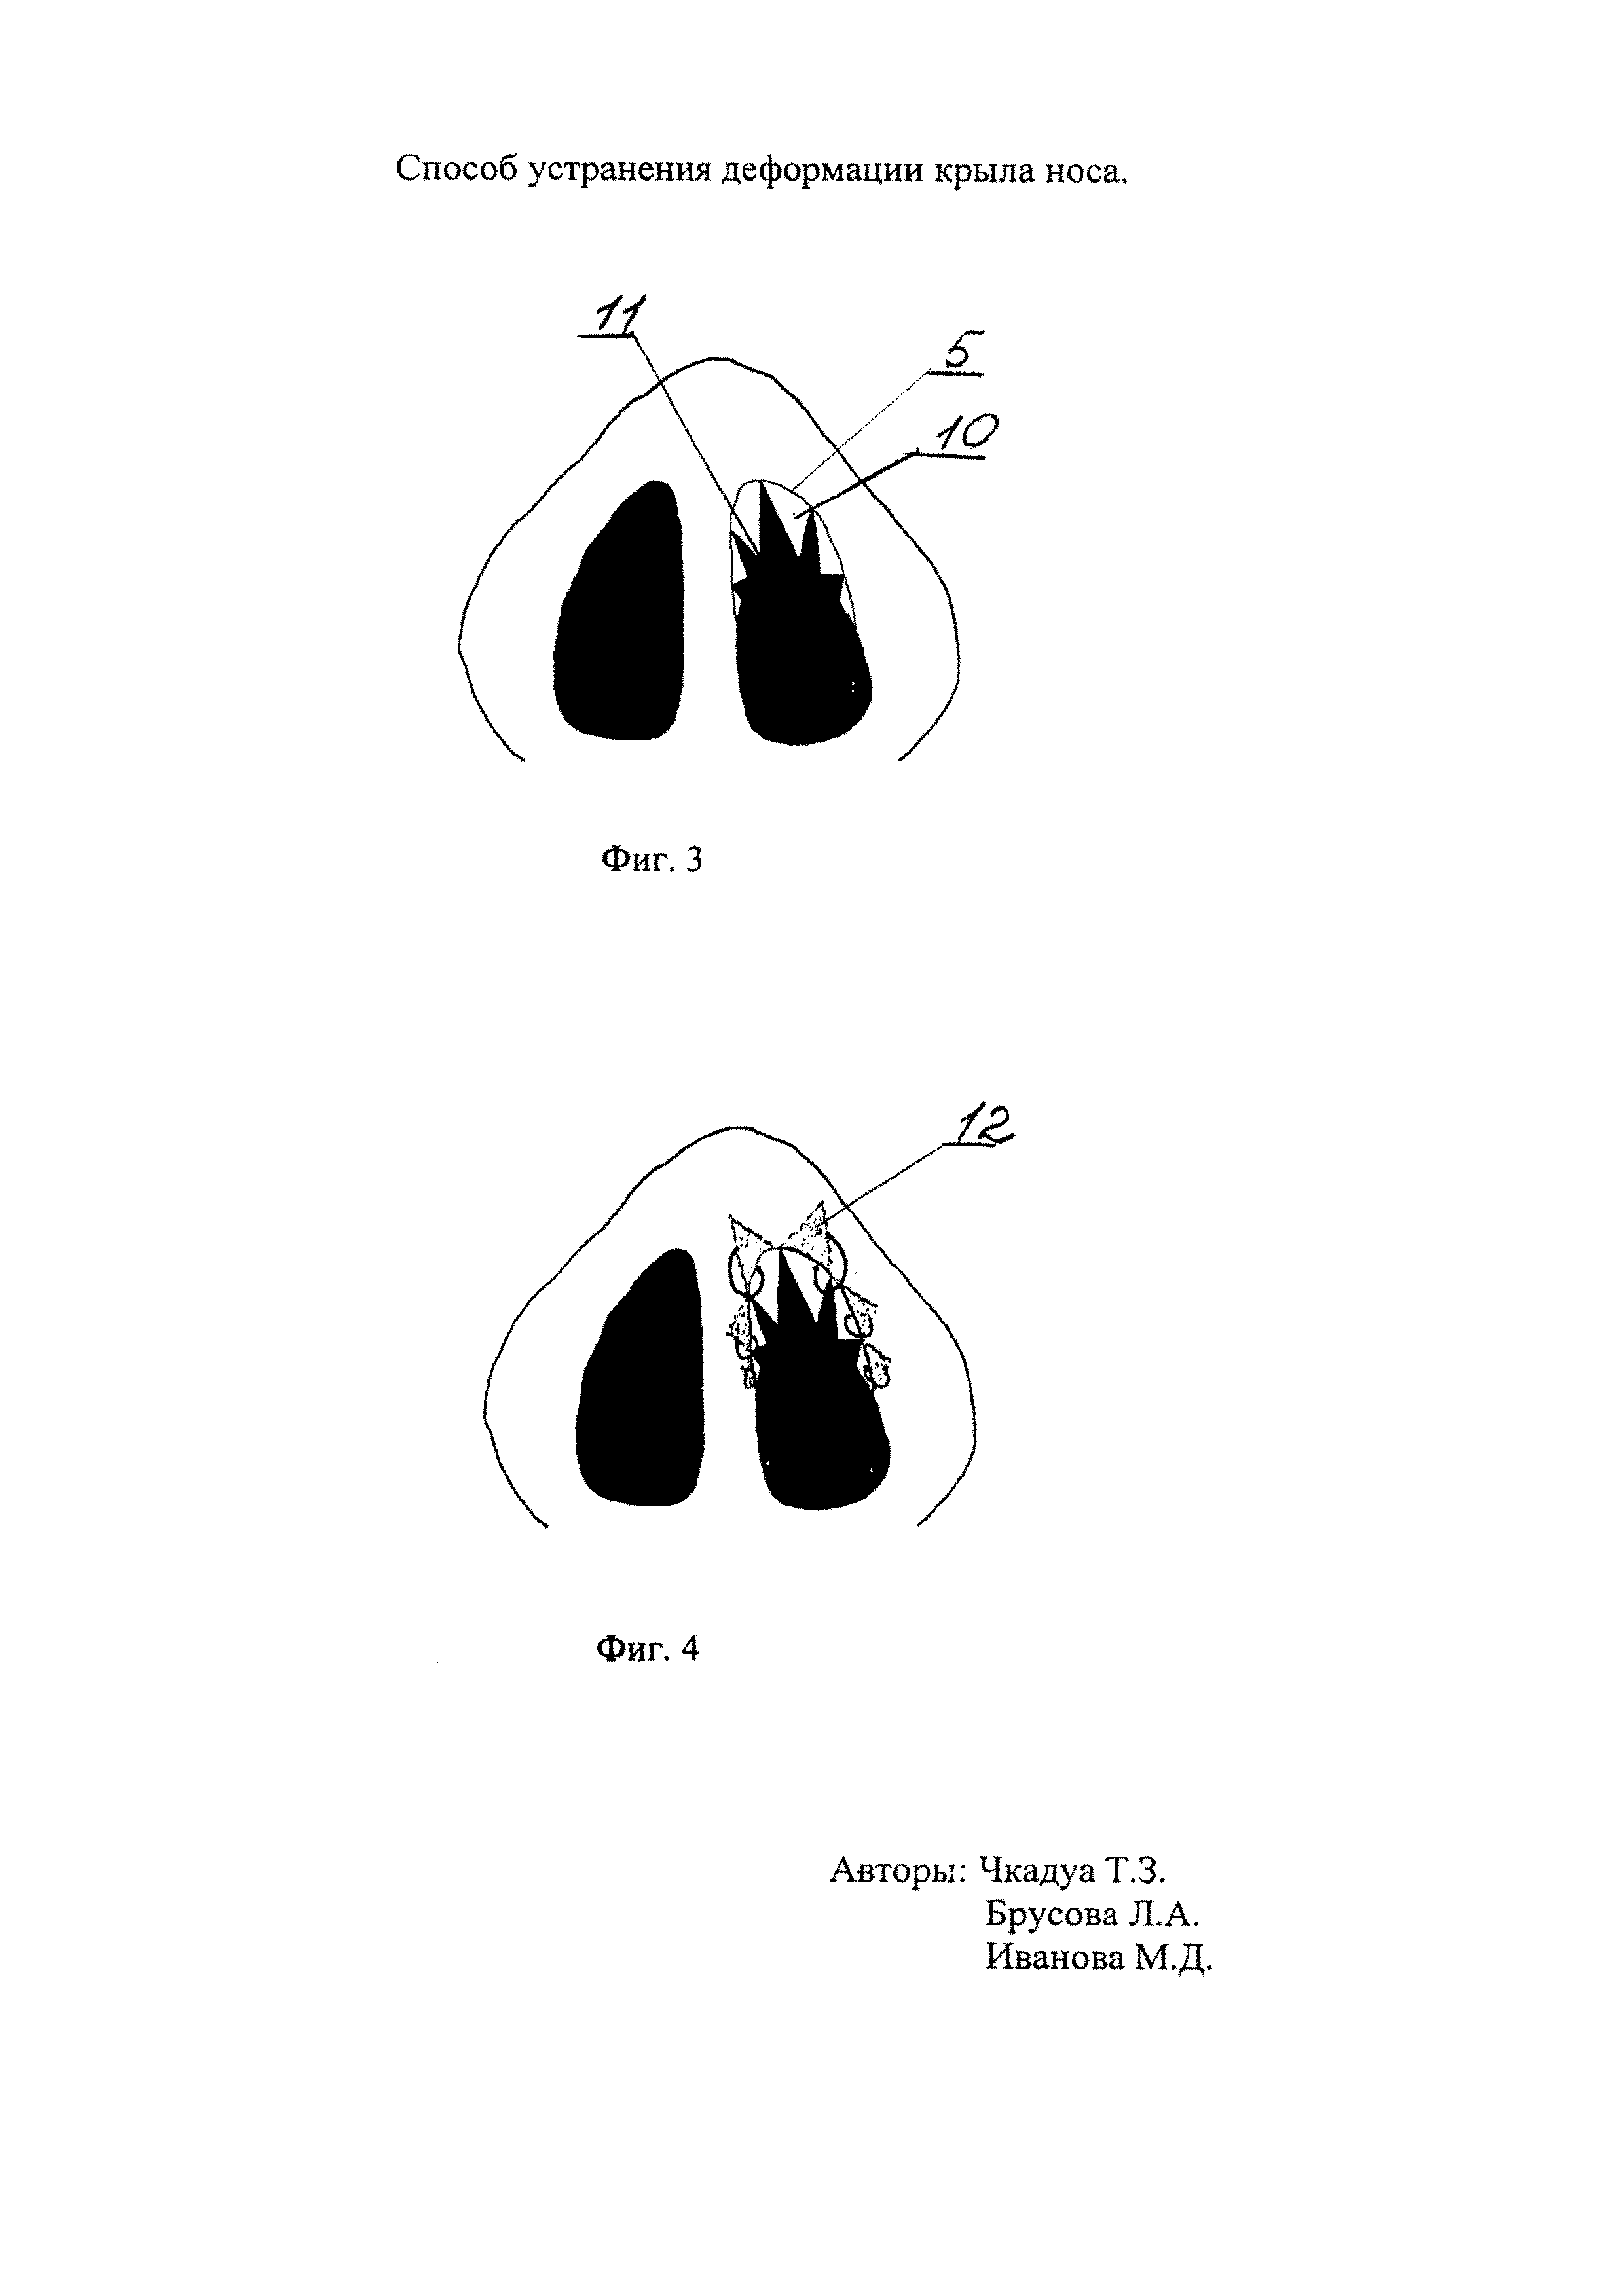 Способ устранения деформации крыла носа